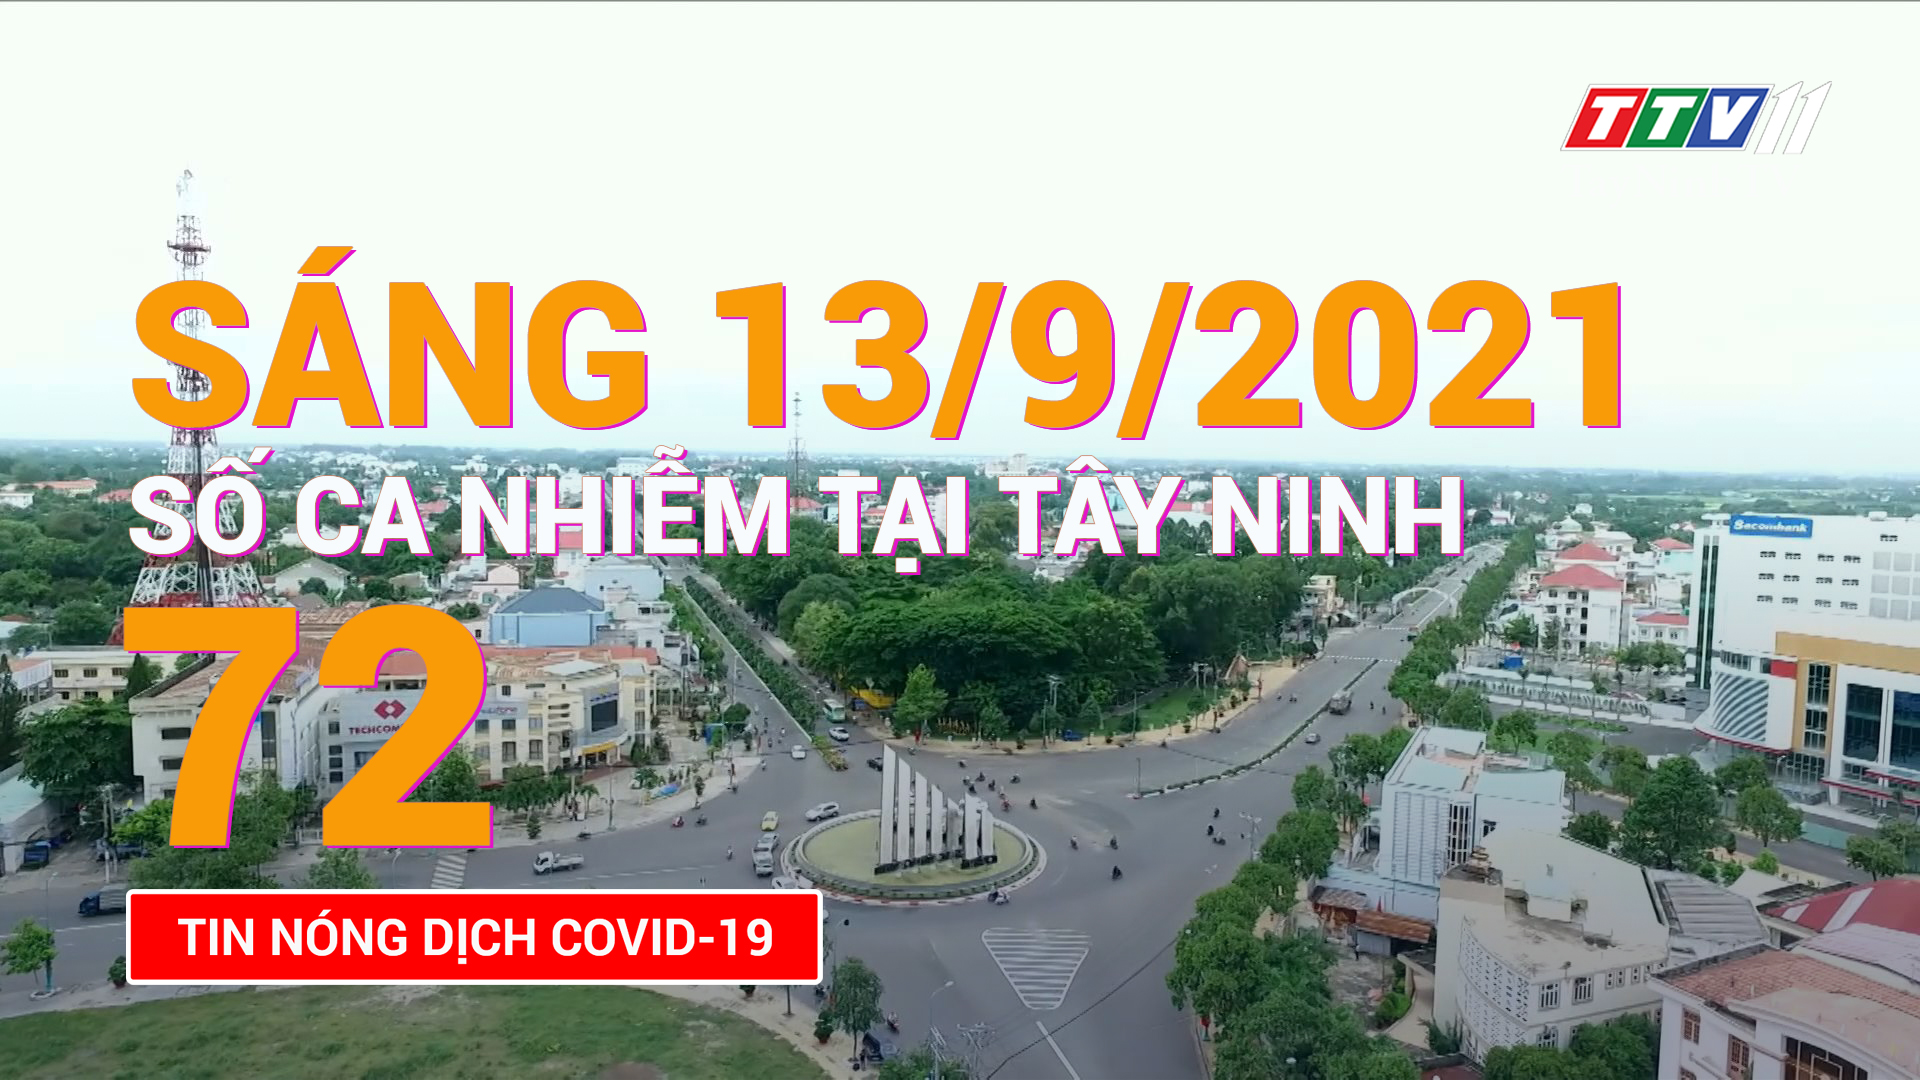 Tin tức Covid-19 sáng 13/9/2021 | TayNinhTV